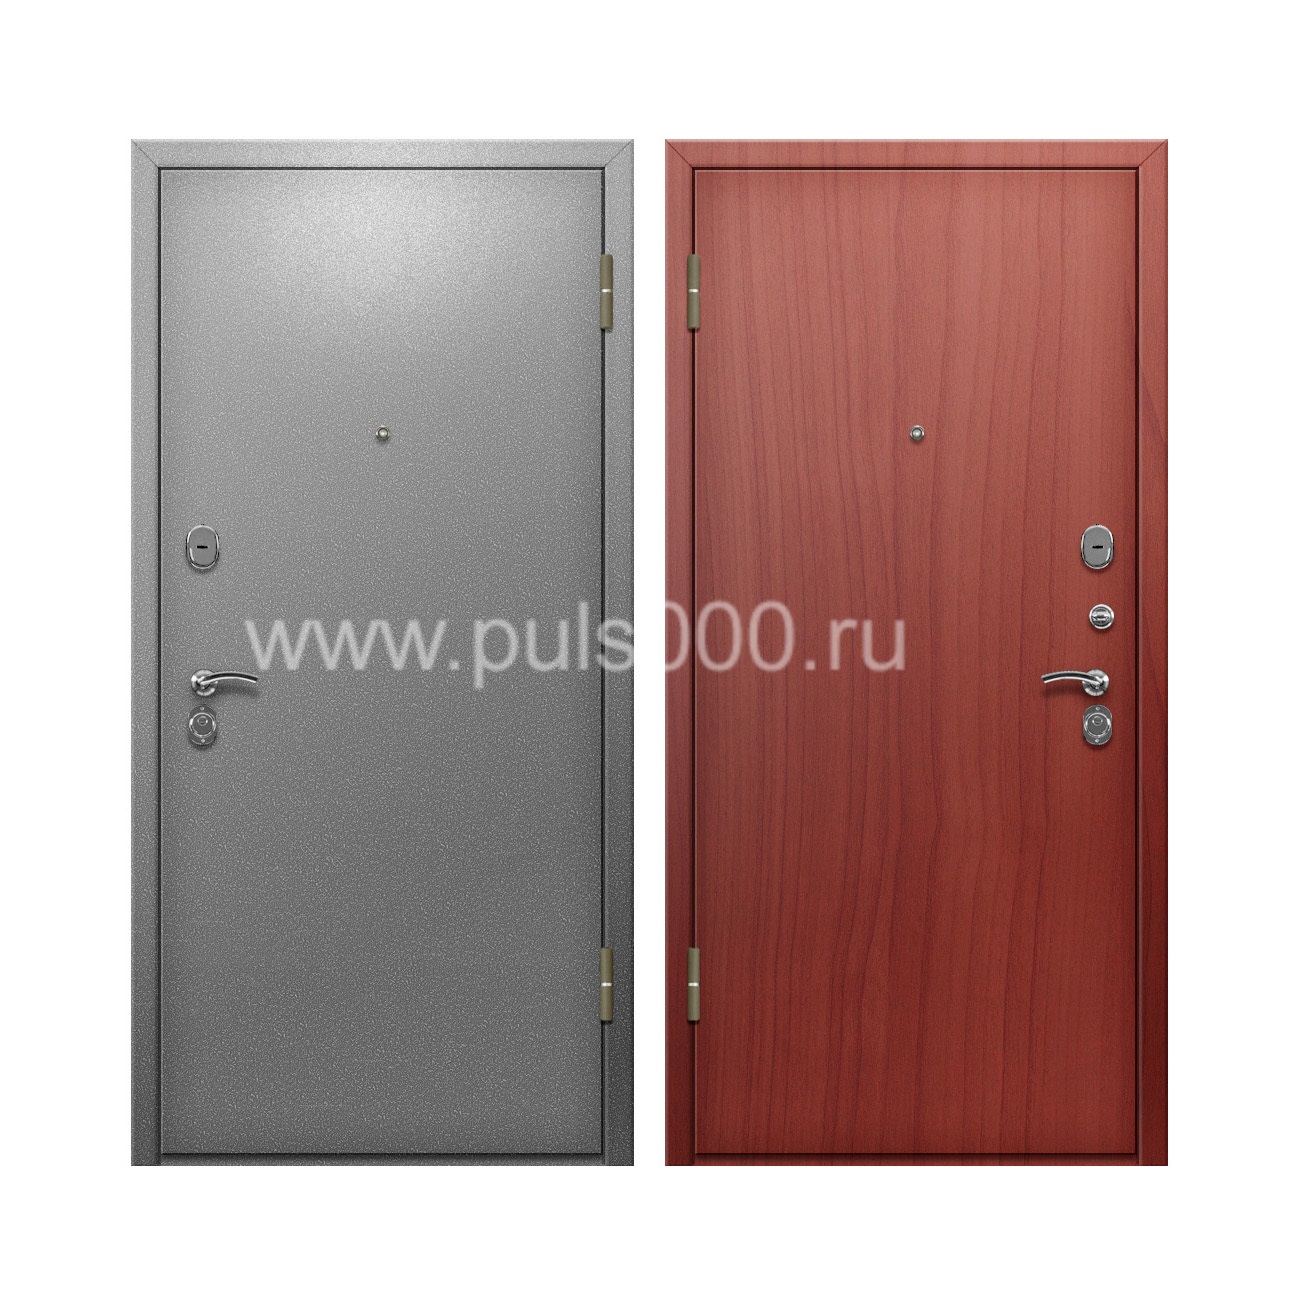 Входная дверь порошковое напыление и ламинат PR-74, цена 20 000  руб.